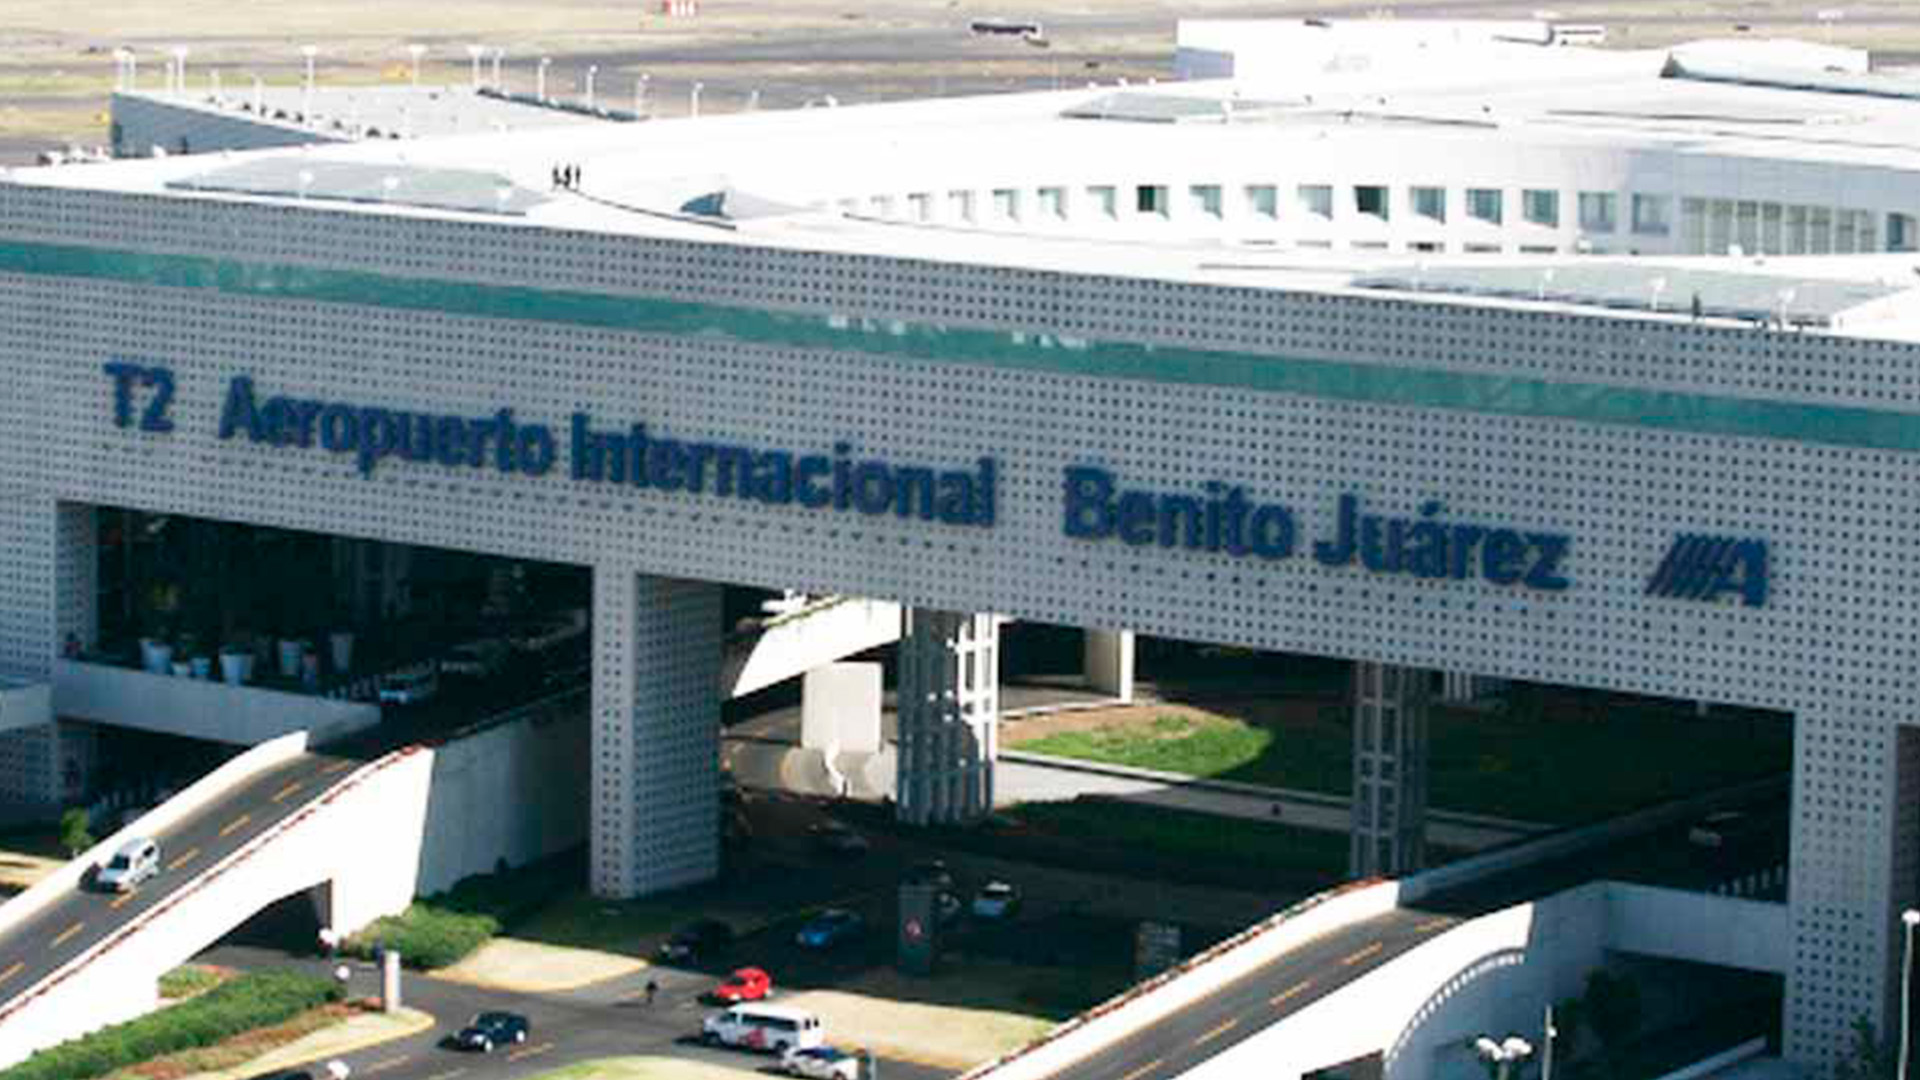 Los episodios de corrupción y tráfico de drogas de los que el Aeropuerto Internacional de la Ciudad de México (AICM) ha sido testigo. Foto: twitter/@galvanochoa